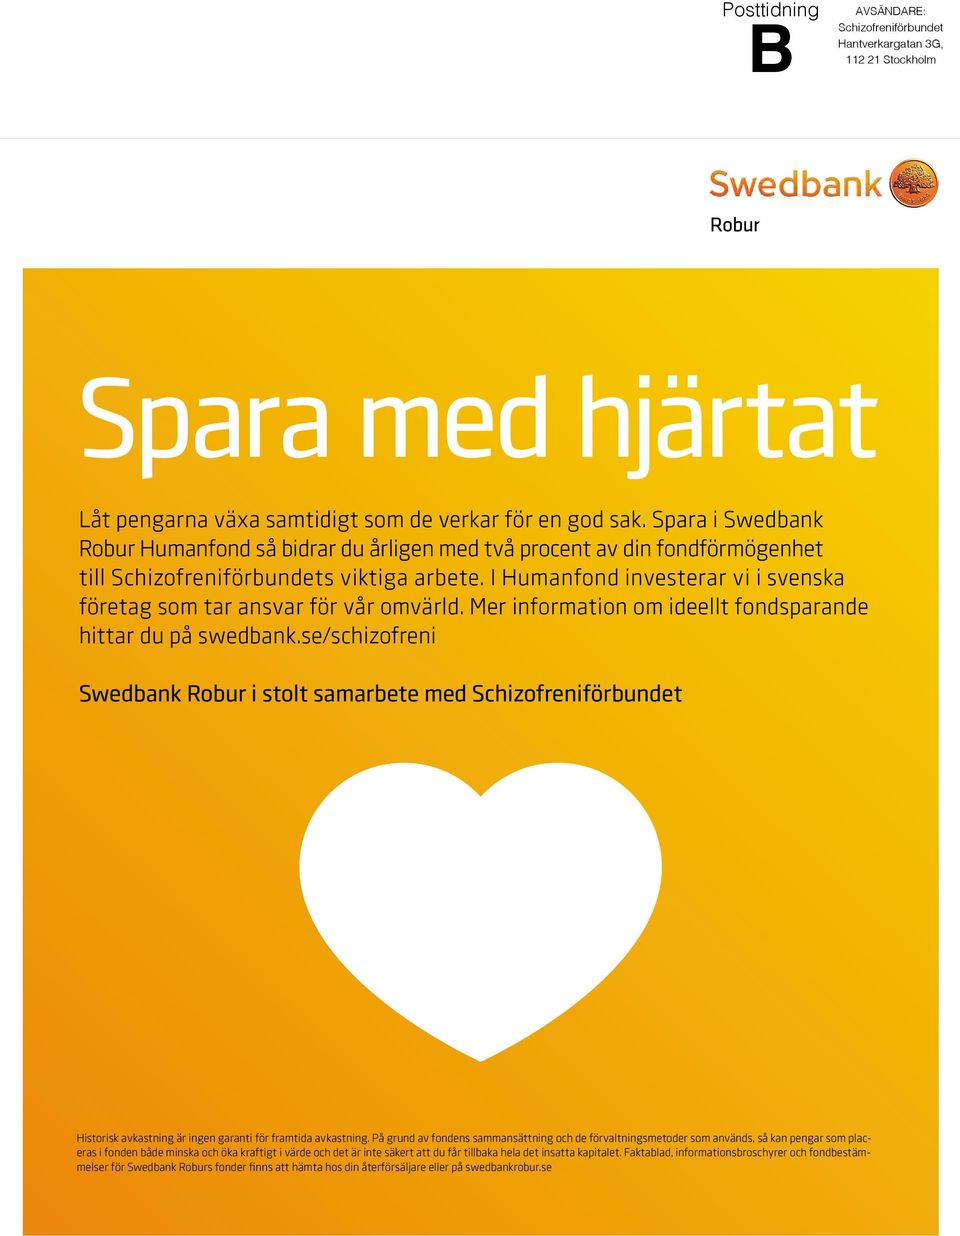 I Humanfond investerar vi i svenska företag som tar ansvar för vår omvärld. Mer information om ideellt fondsparande hittar du på swedbank.